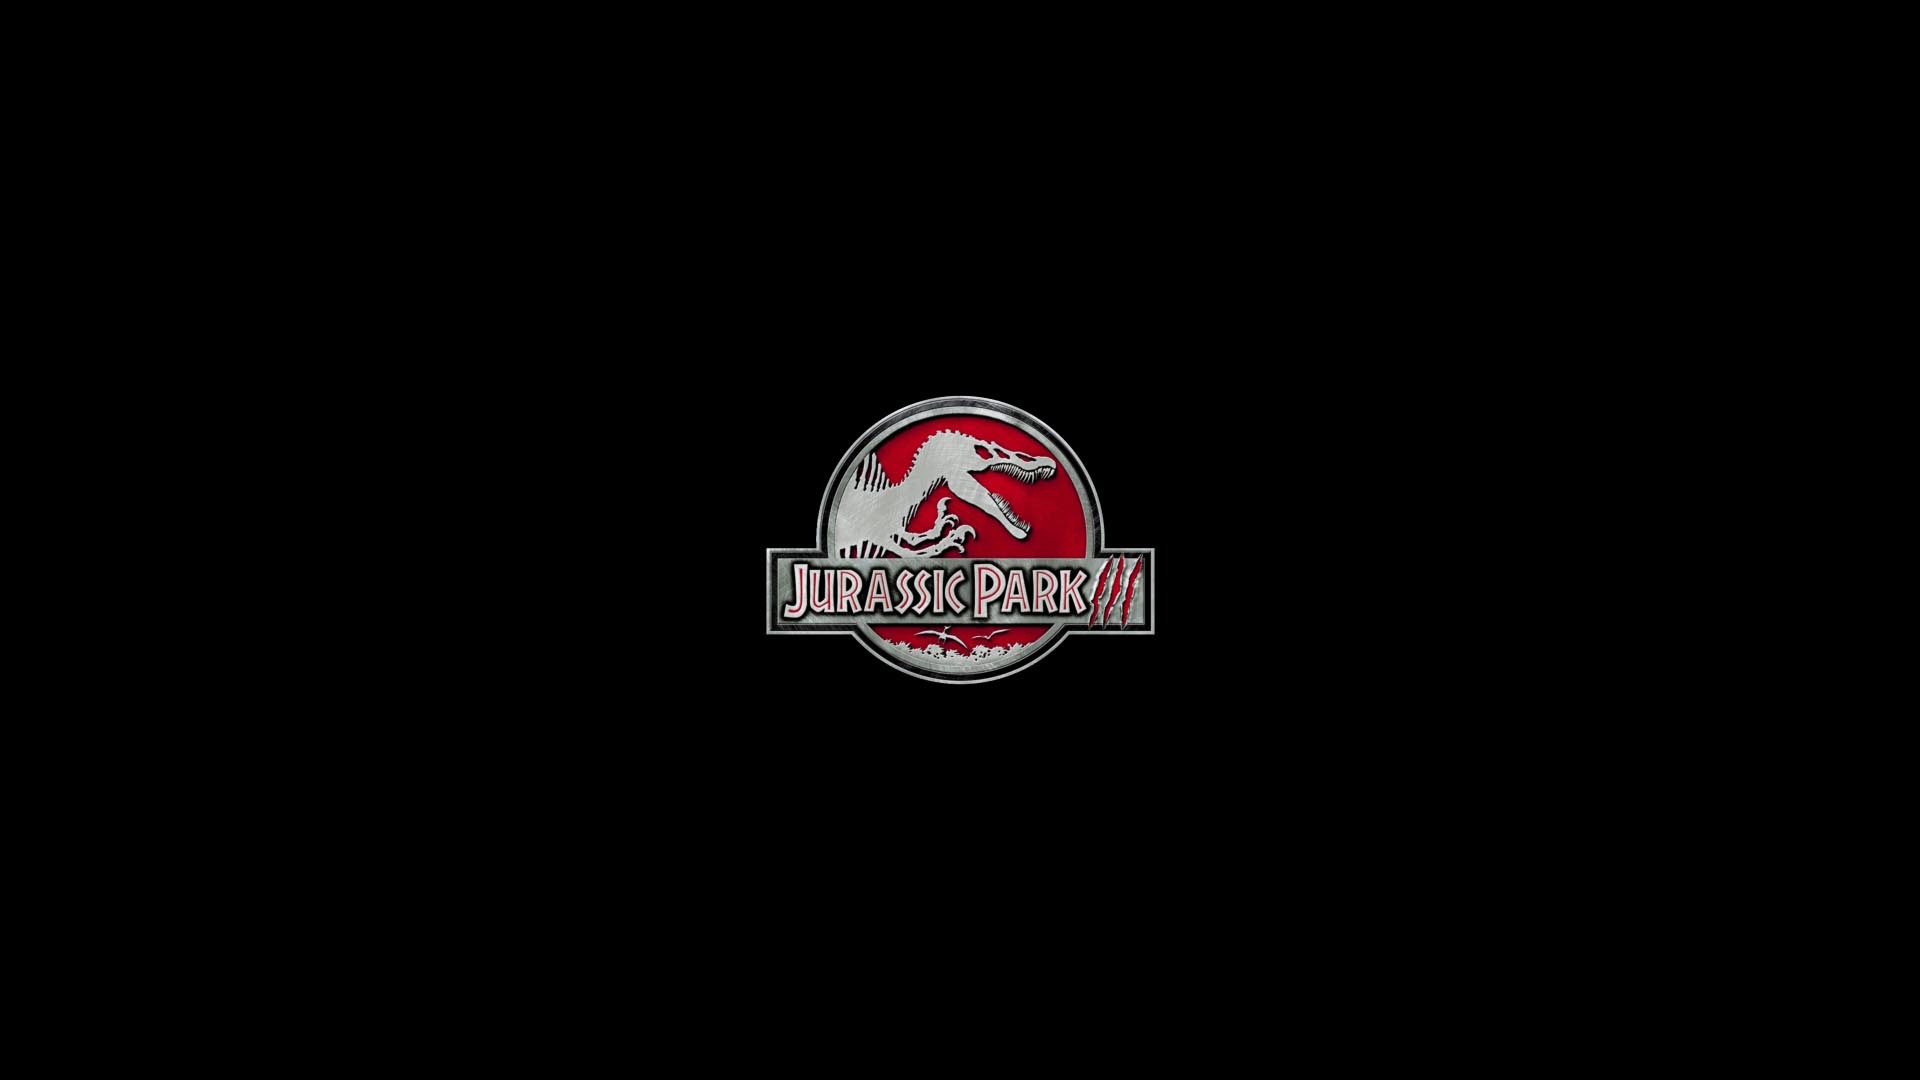 Descargar fondos de escritorio de Jurassic Park Iii (Parque Jurásico Iii) HD